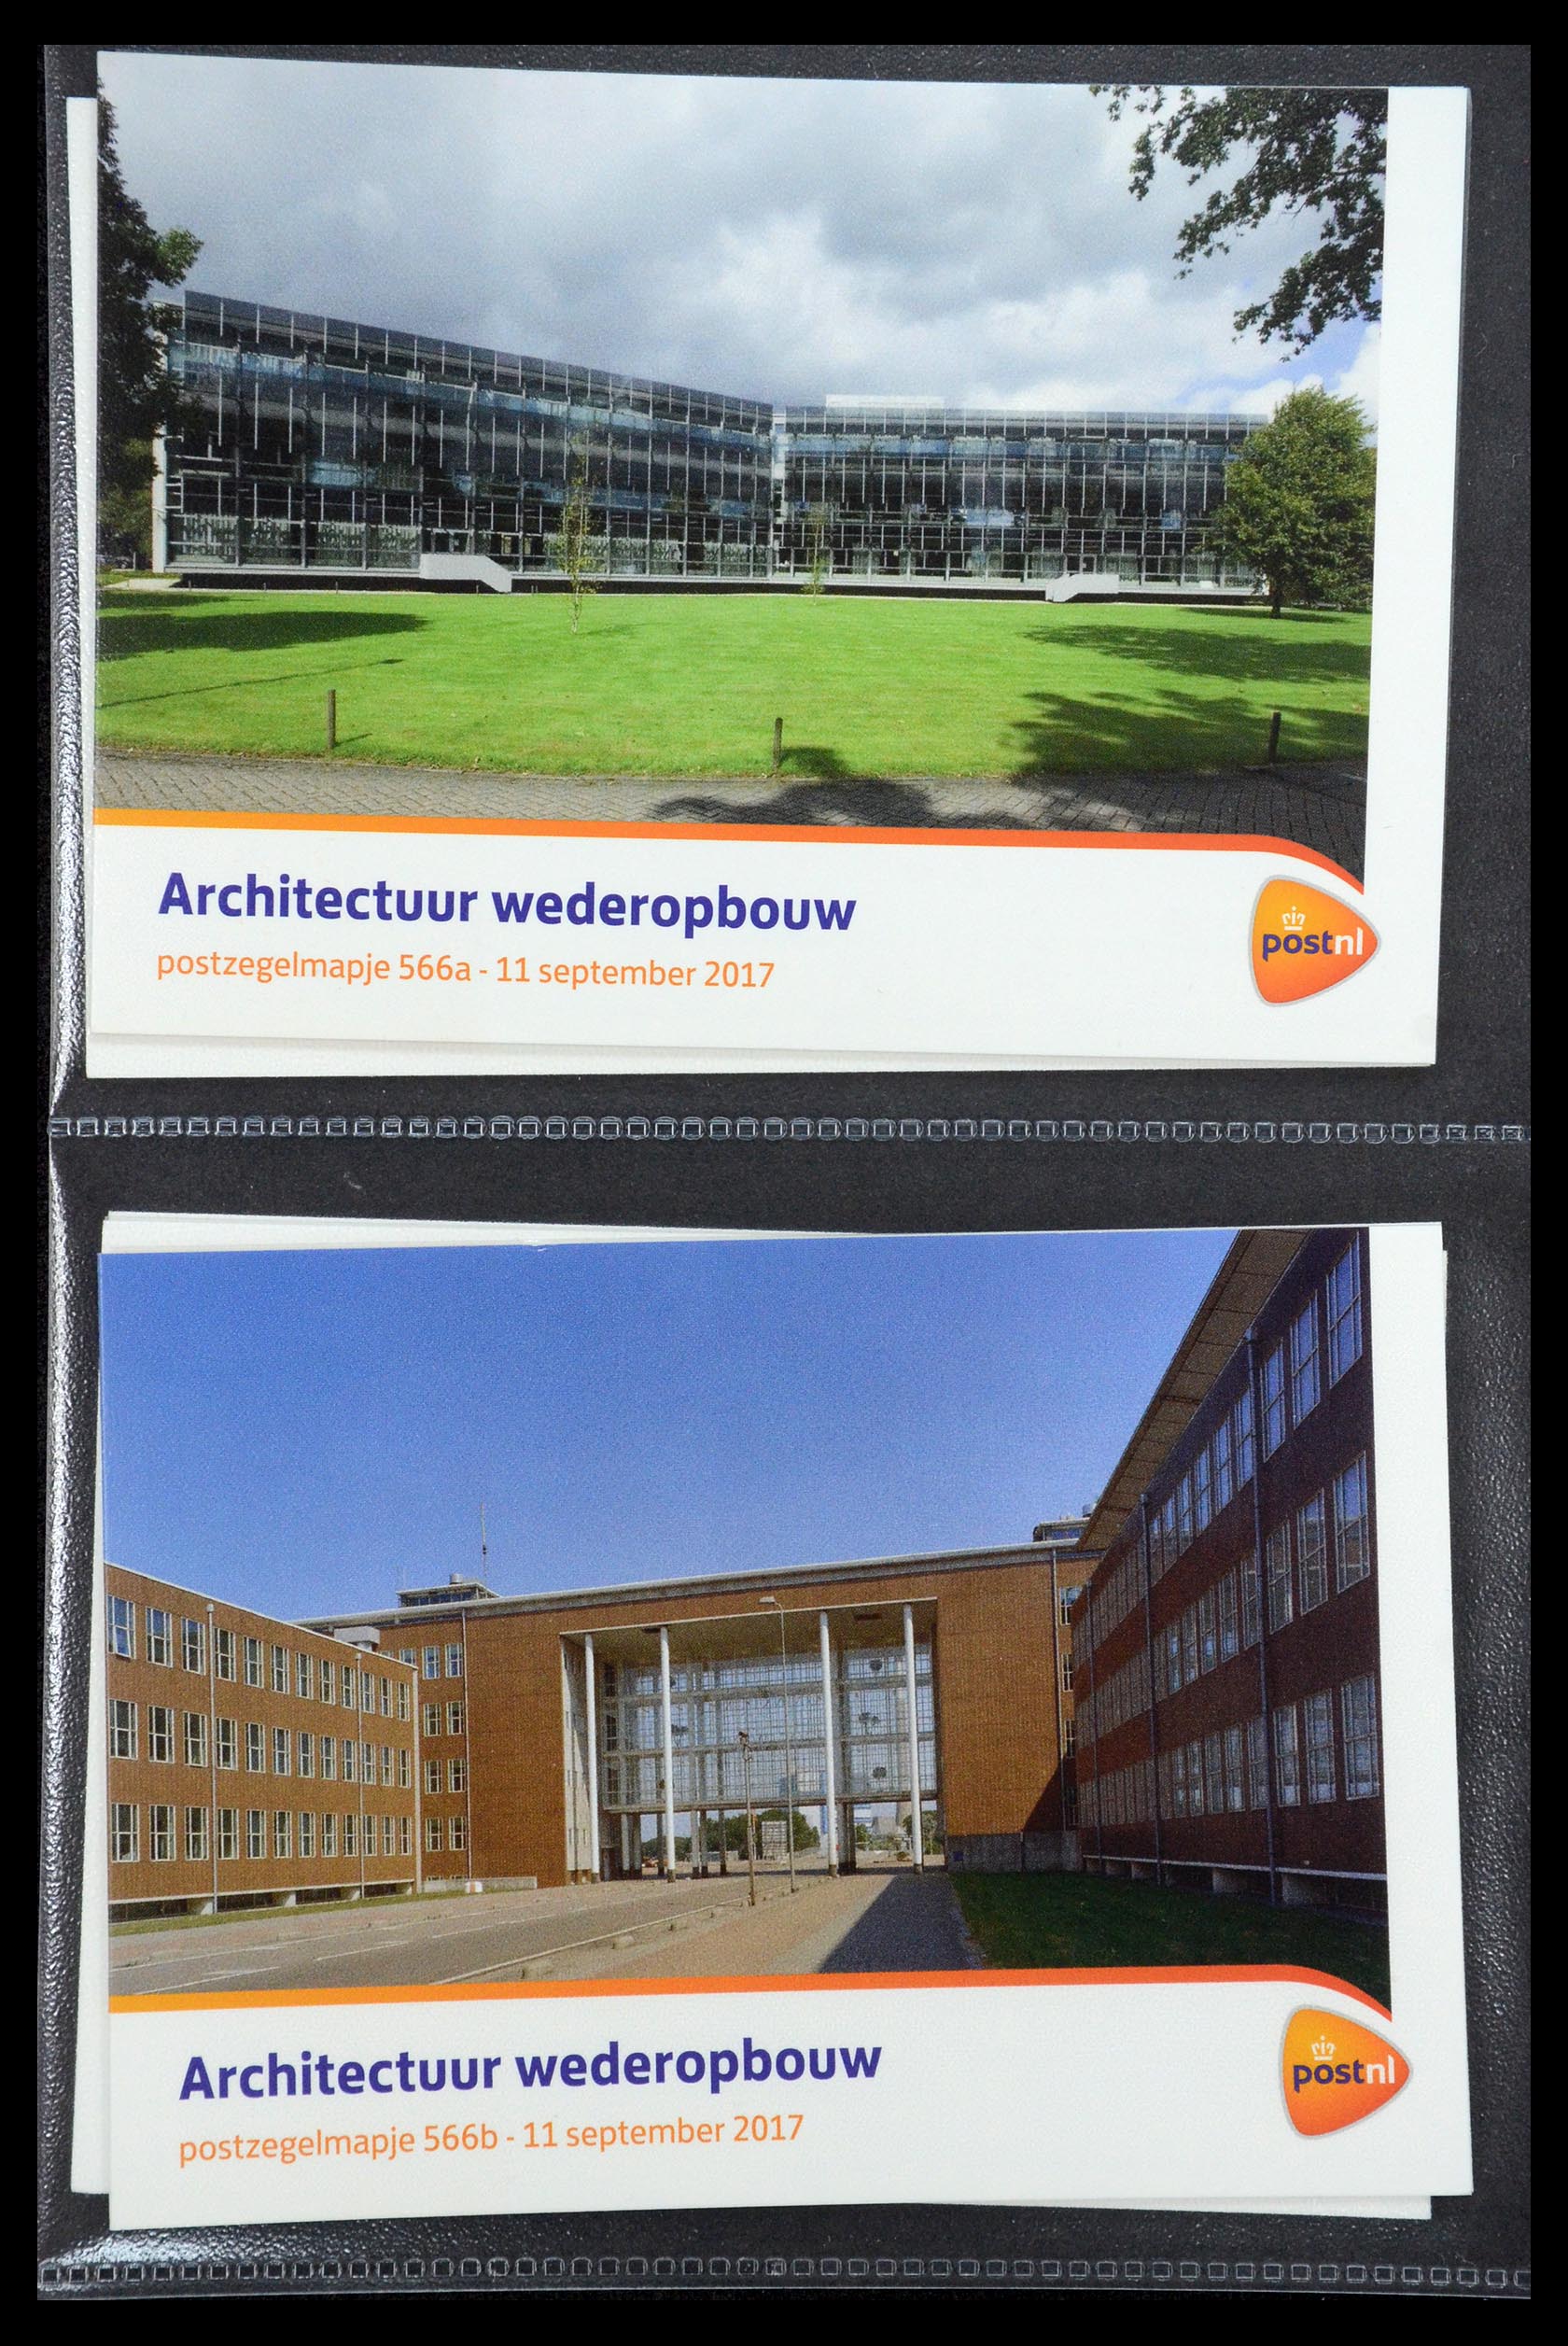 35187 340 - Stamp Collection 35187 Netherlands PTT presentation packs 1982-2019!